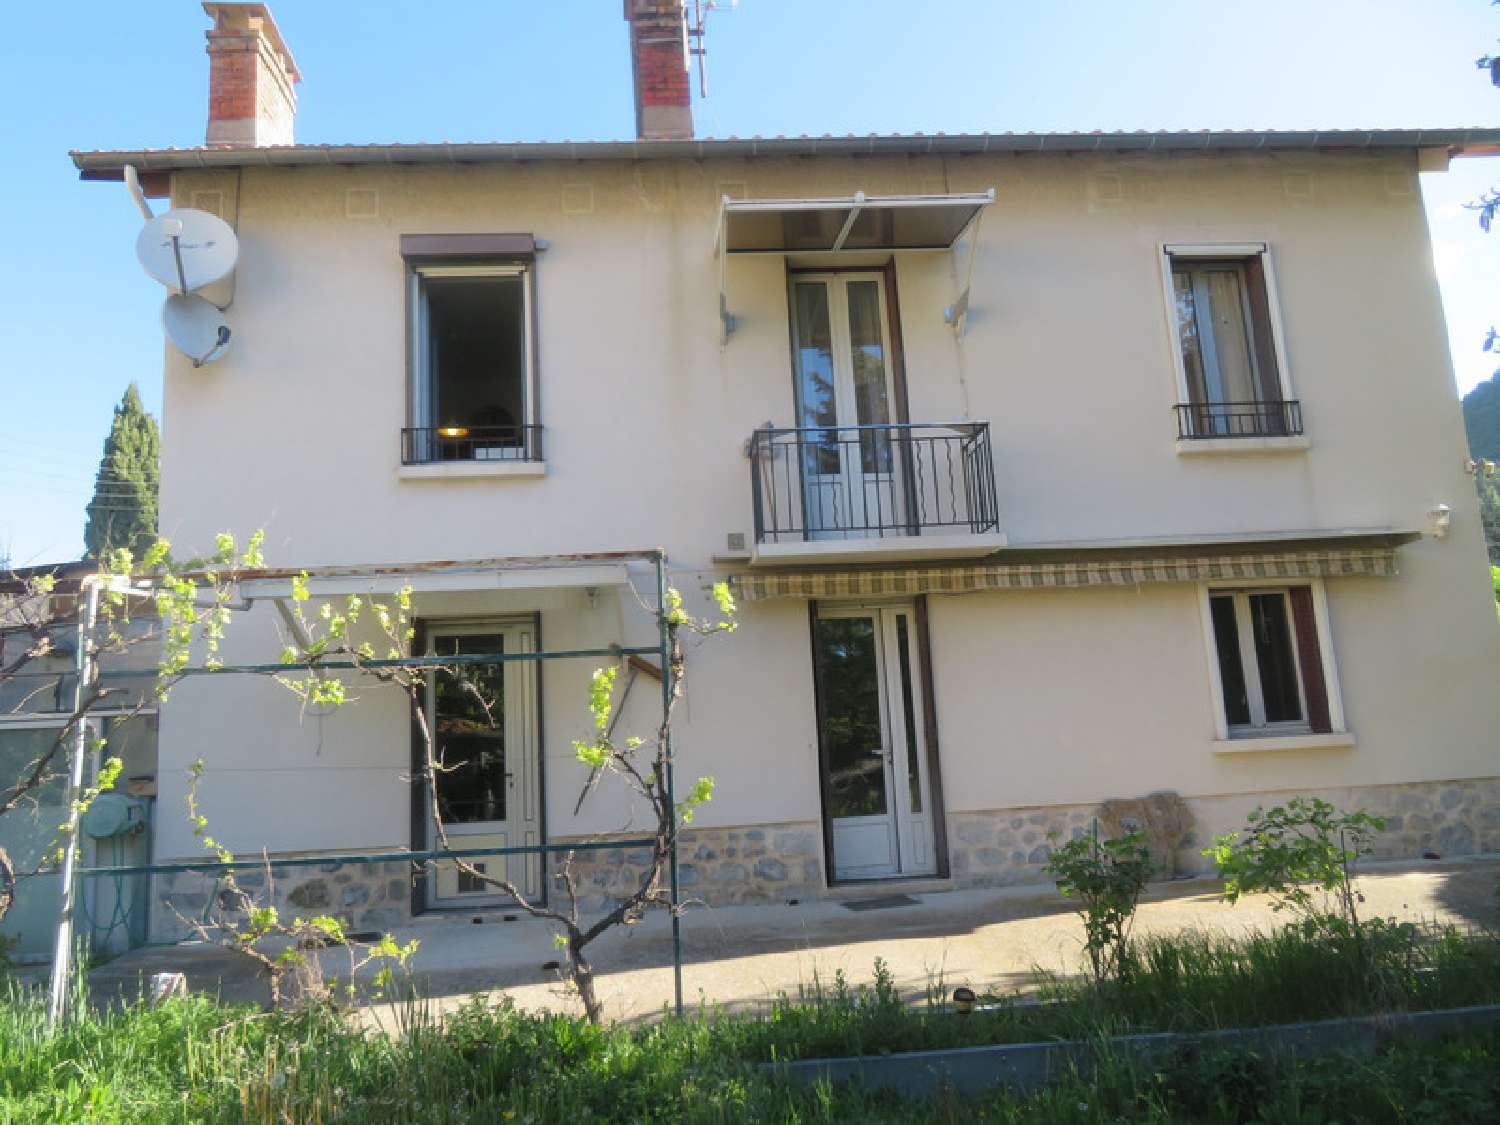  à vendre maison bourgeoise Digne-Les-Bains Alpes-de-Haute-Provence 1